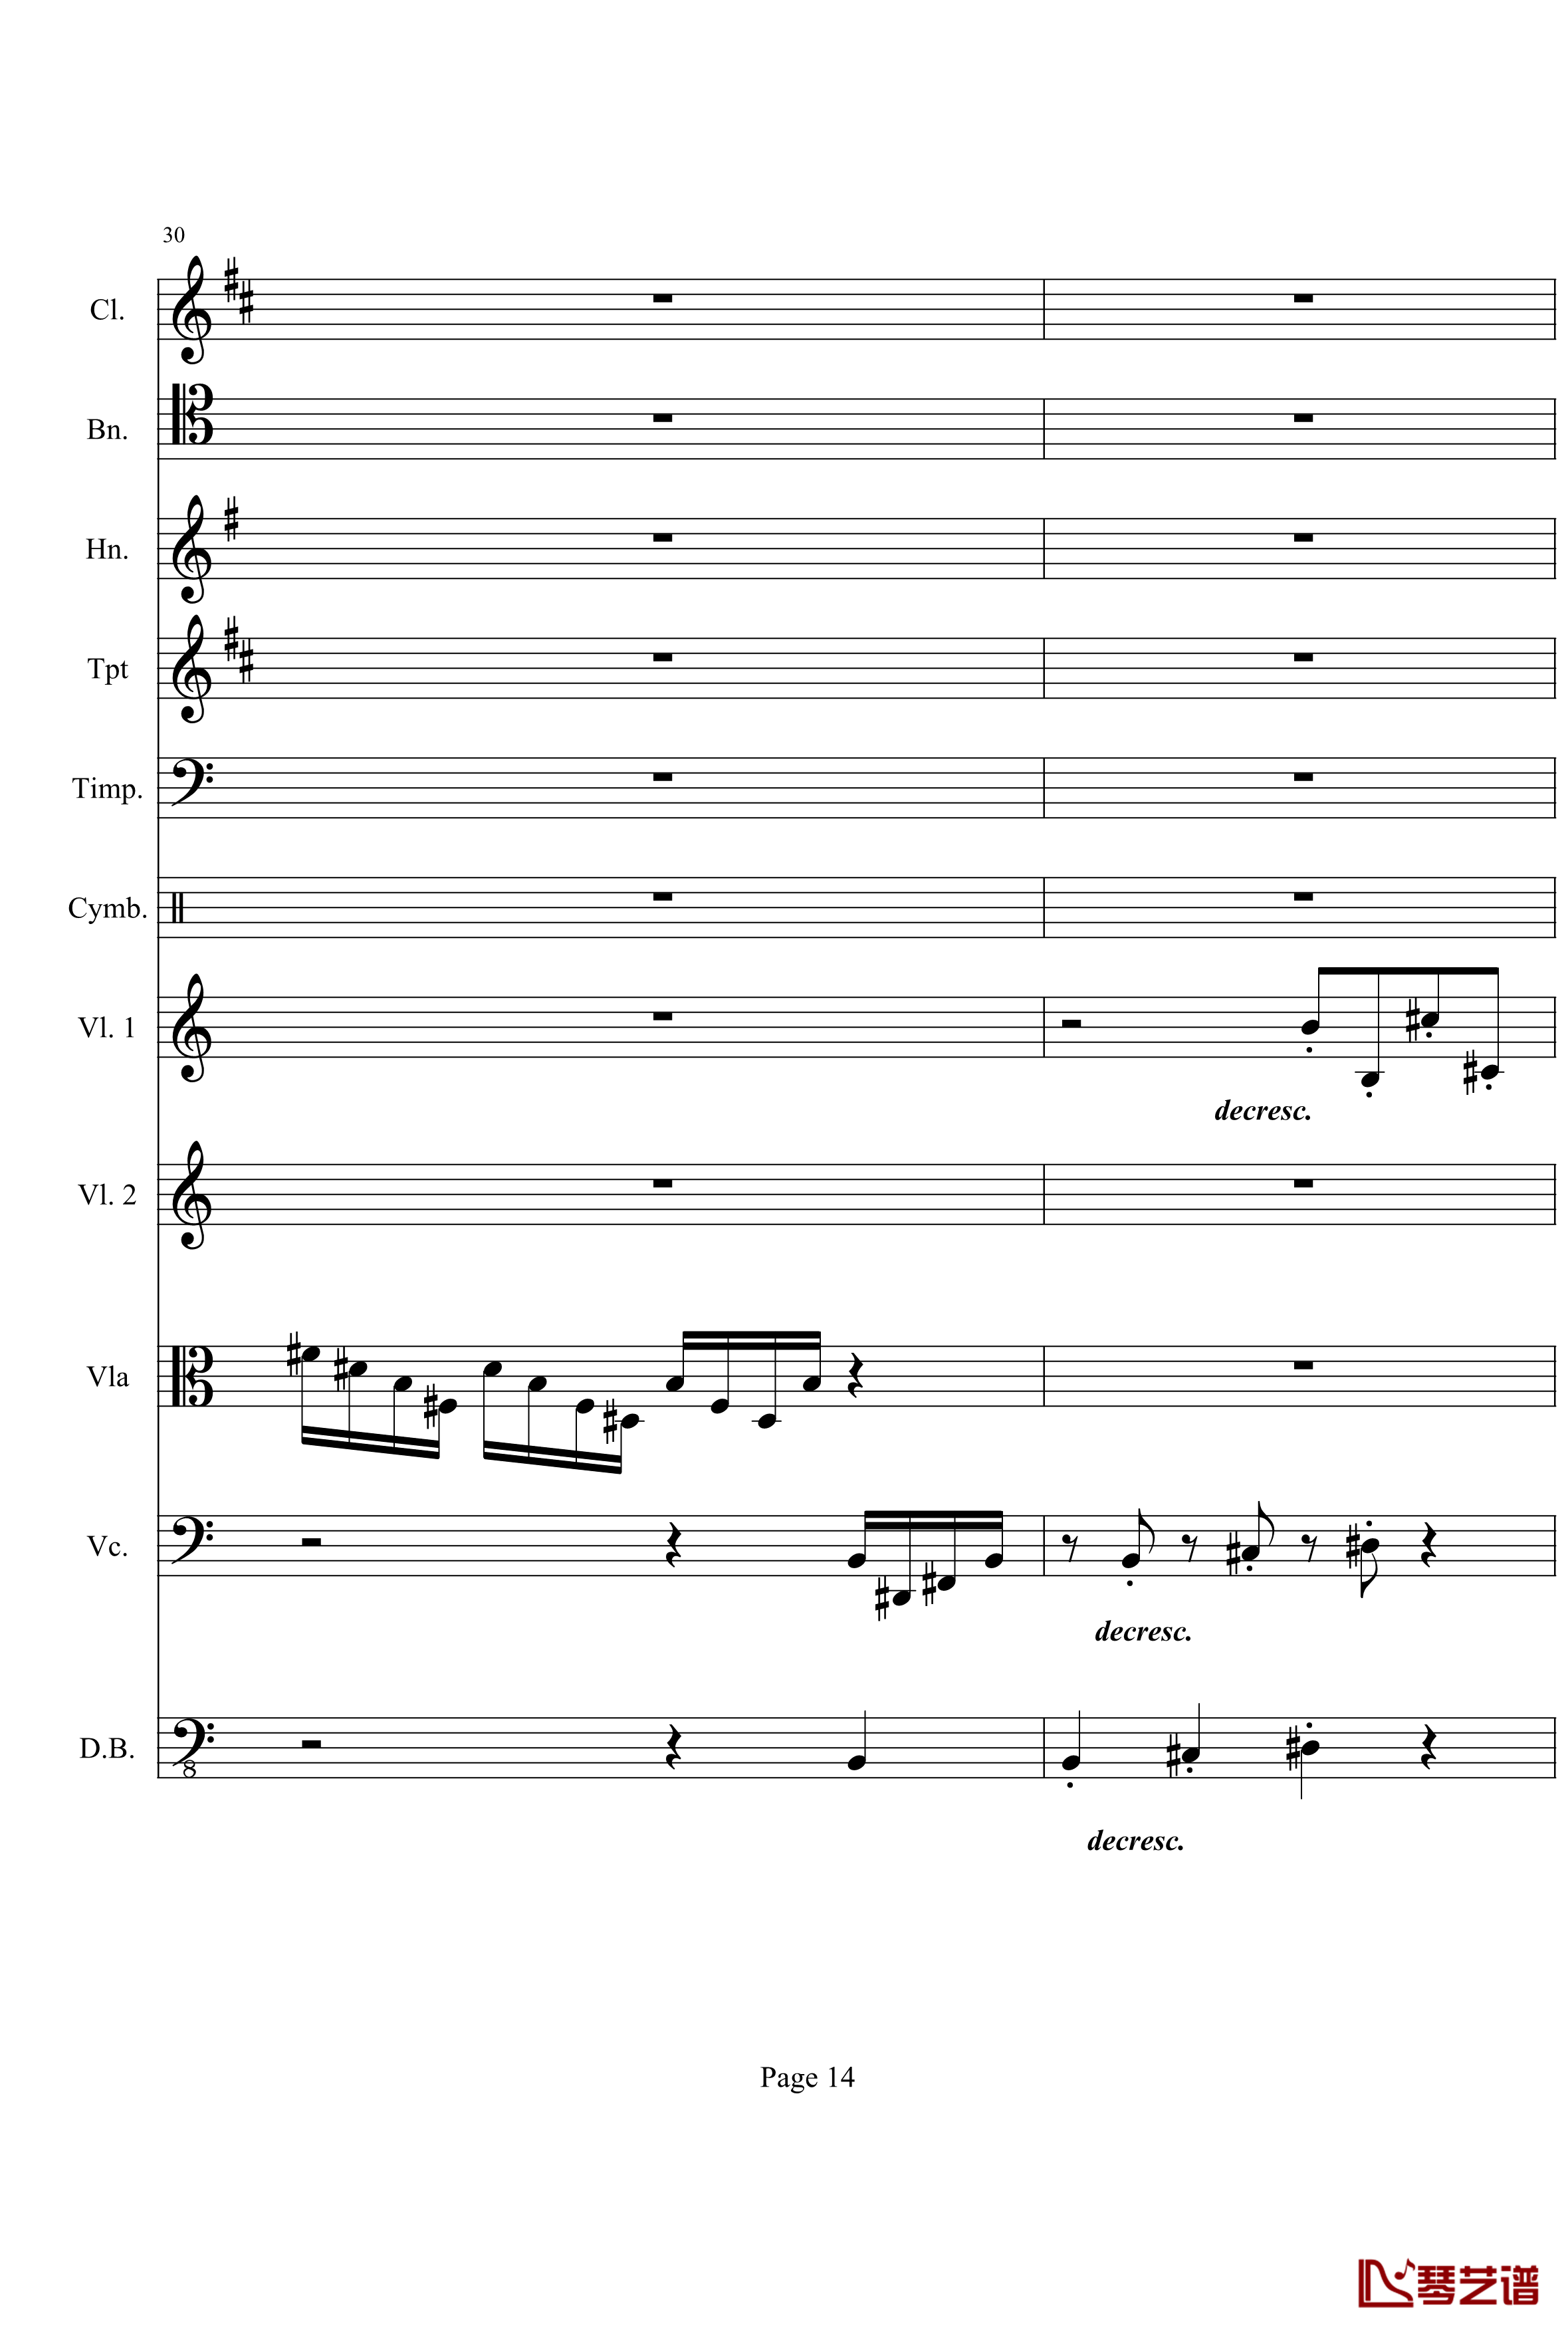 奏鸣曲之交响钢琴谱-第21-Ⅰ-贝多芬-beethoven14